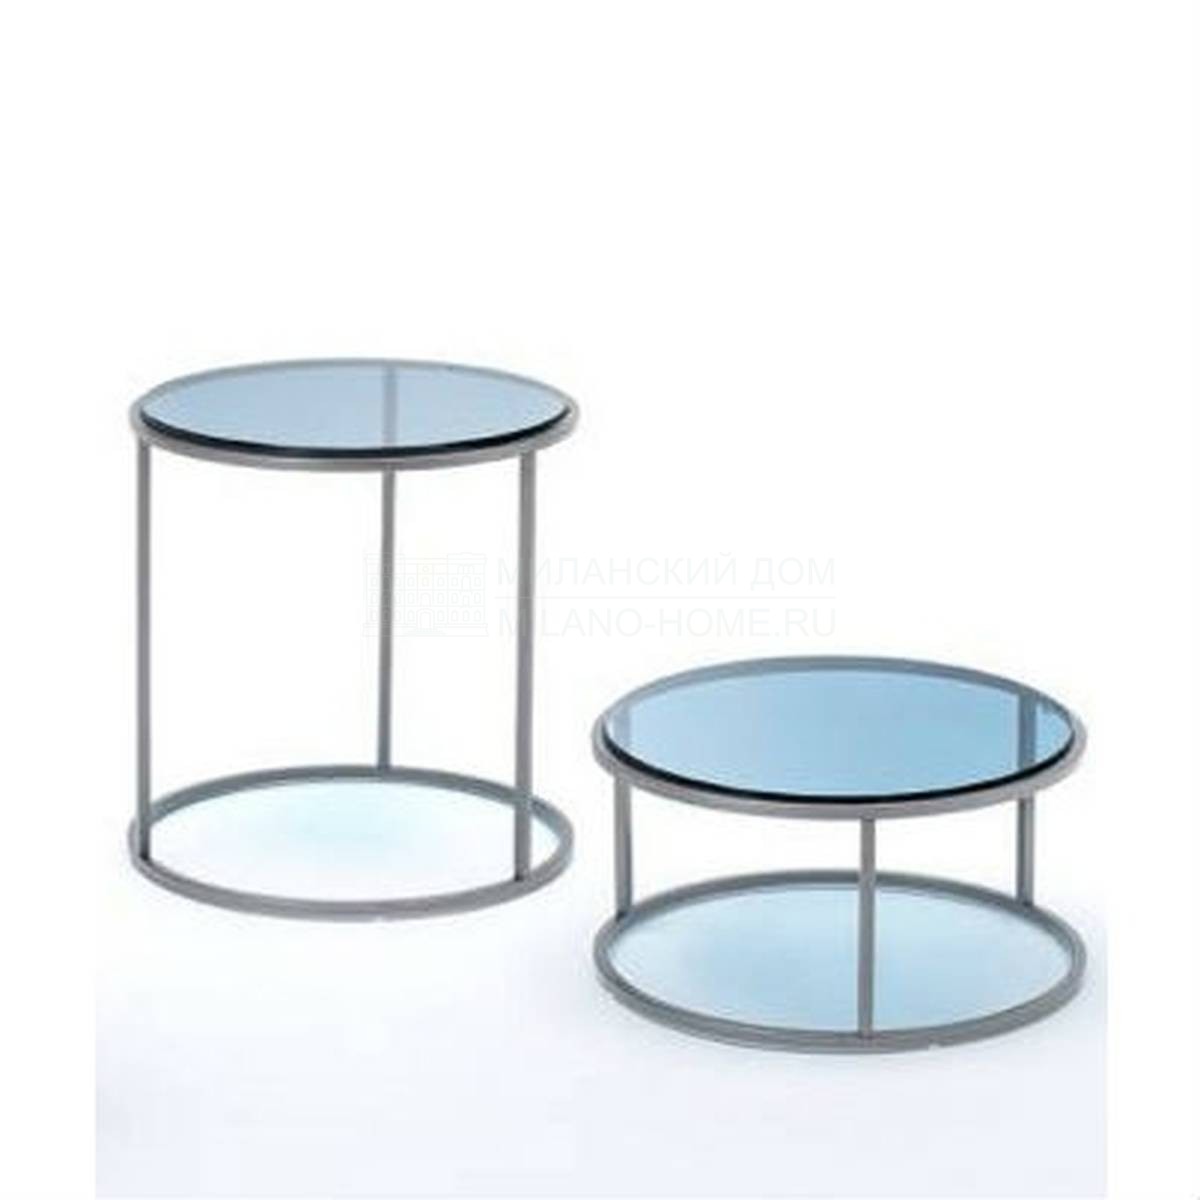 Круглый стол Ile round table из Италии фабрики LIVING DIVANI